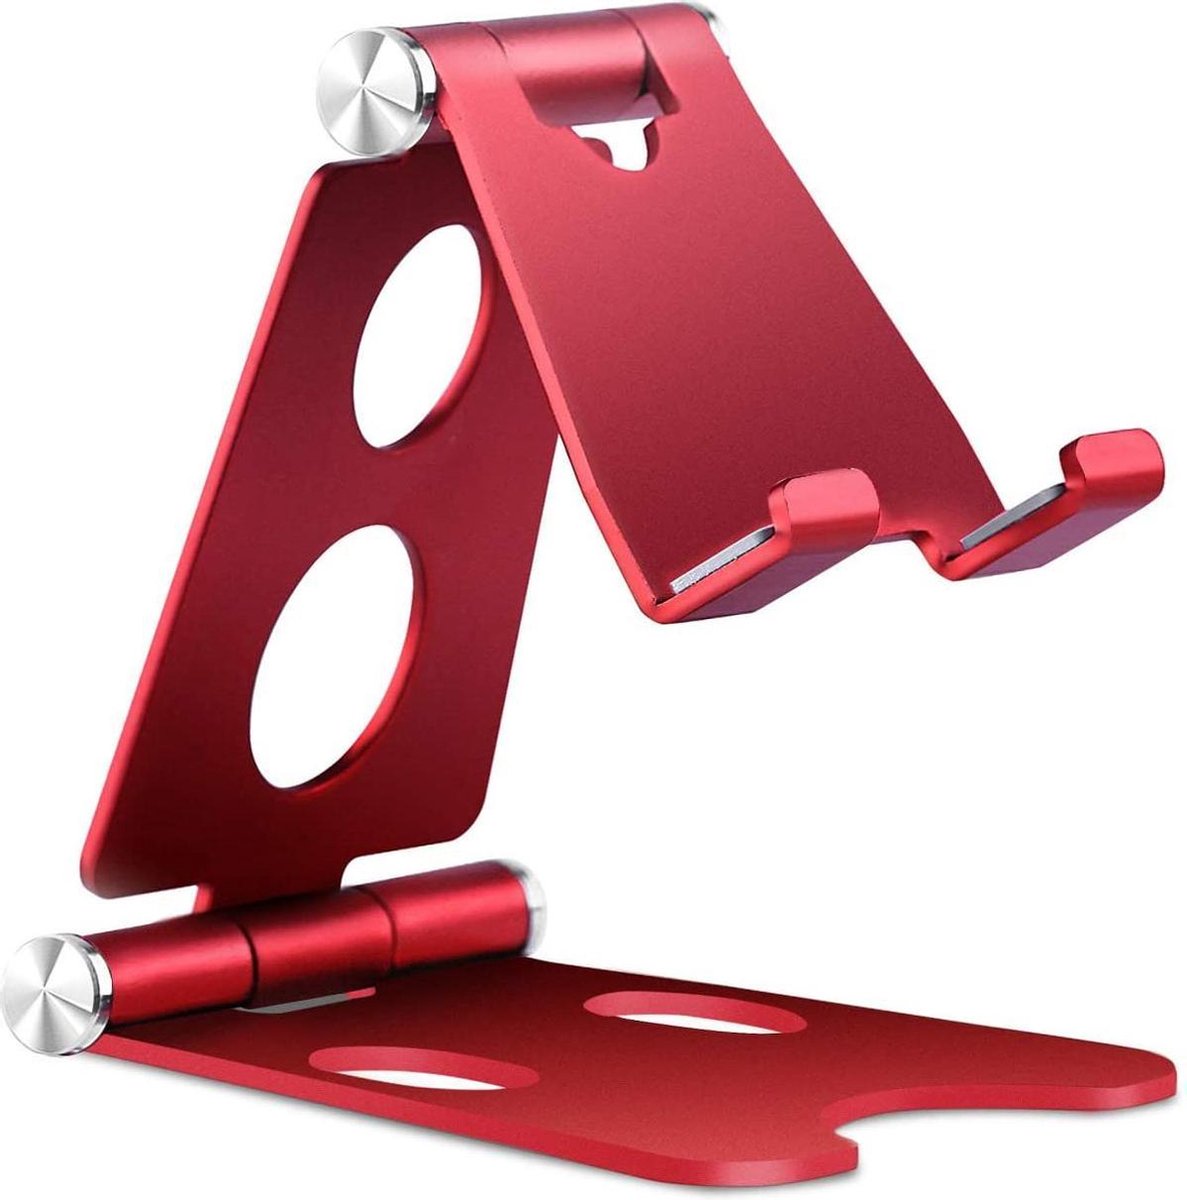 Tablet Houder Opvouwbaar/Inklapbaar - Telefoon, Samsung Galaxy Tab & iPad Standaard voor Bureau of Tafel - Rood